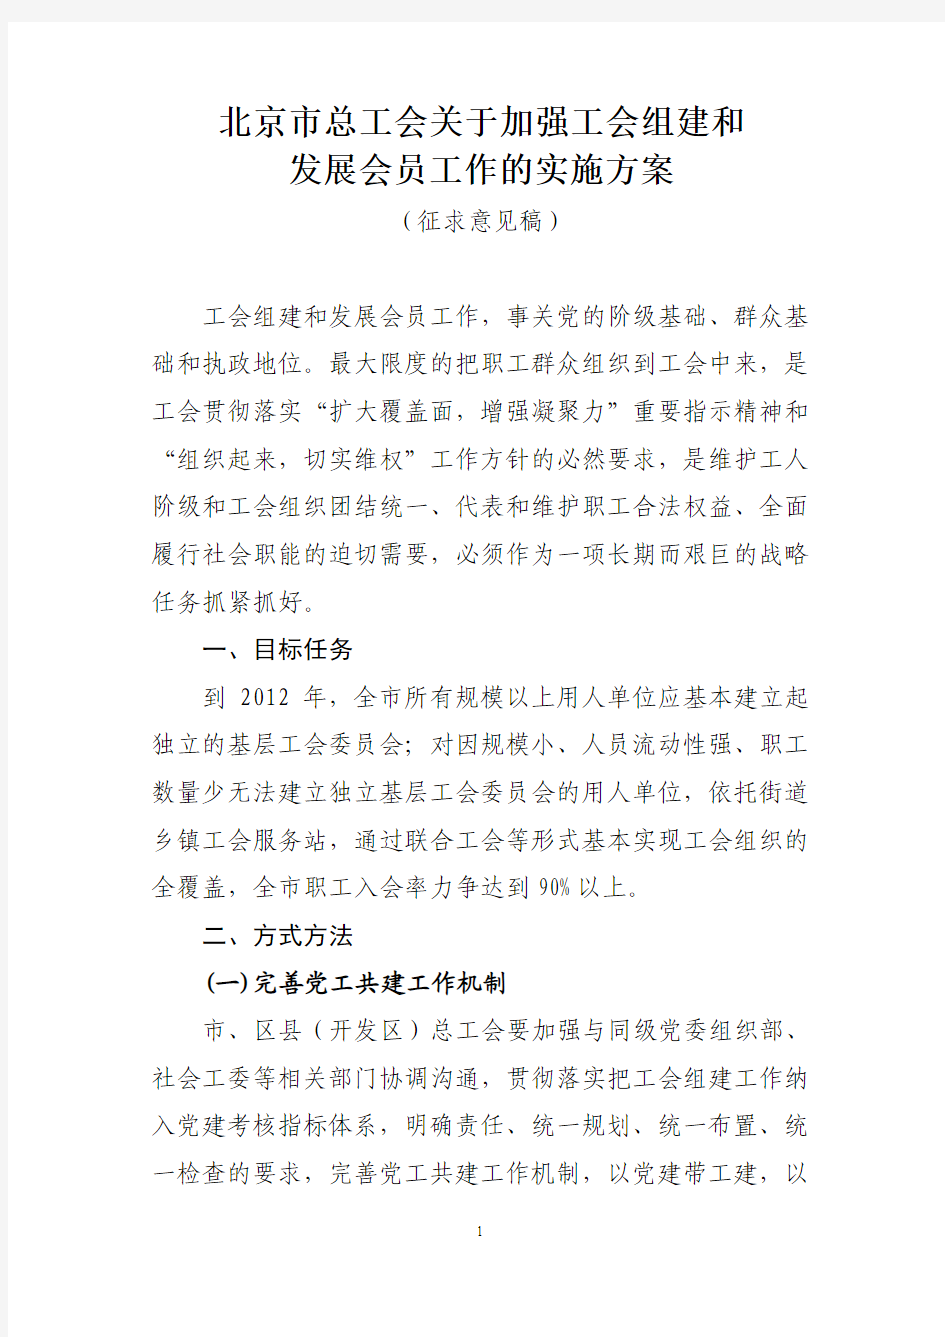 北京市总工会关于工会组建和发展会员工作